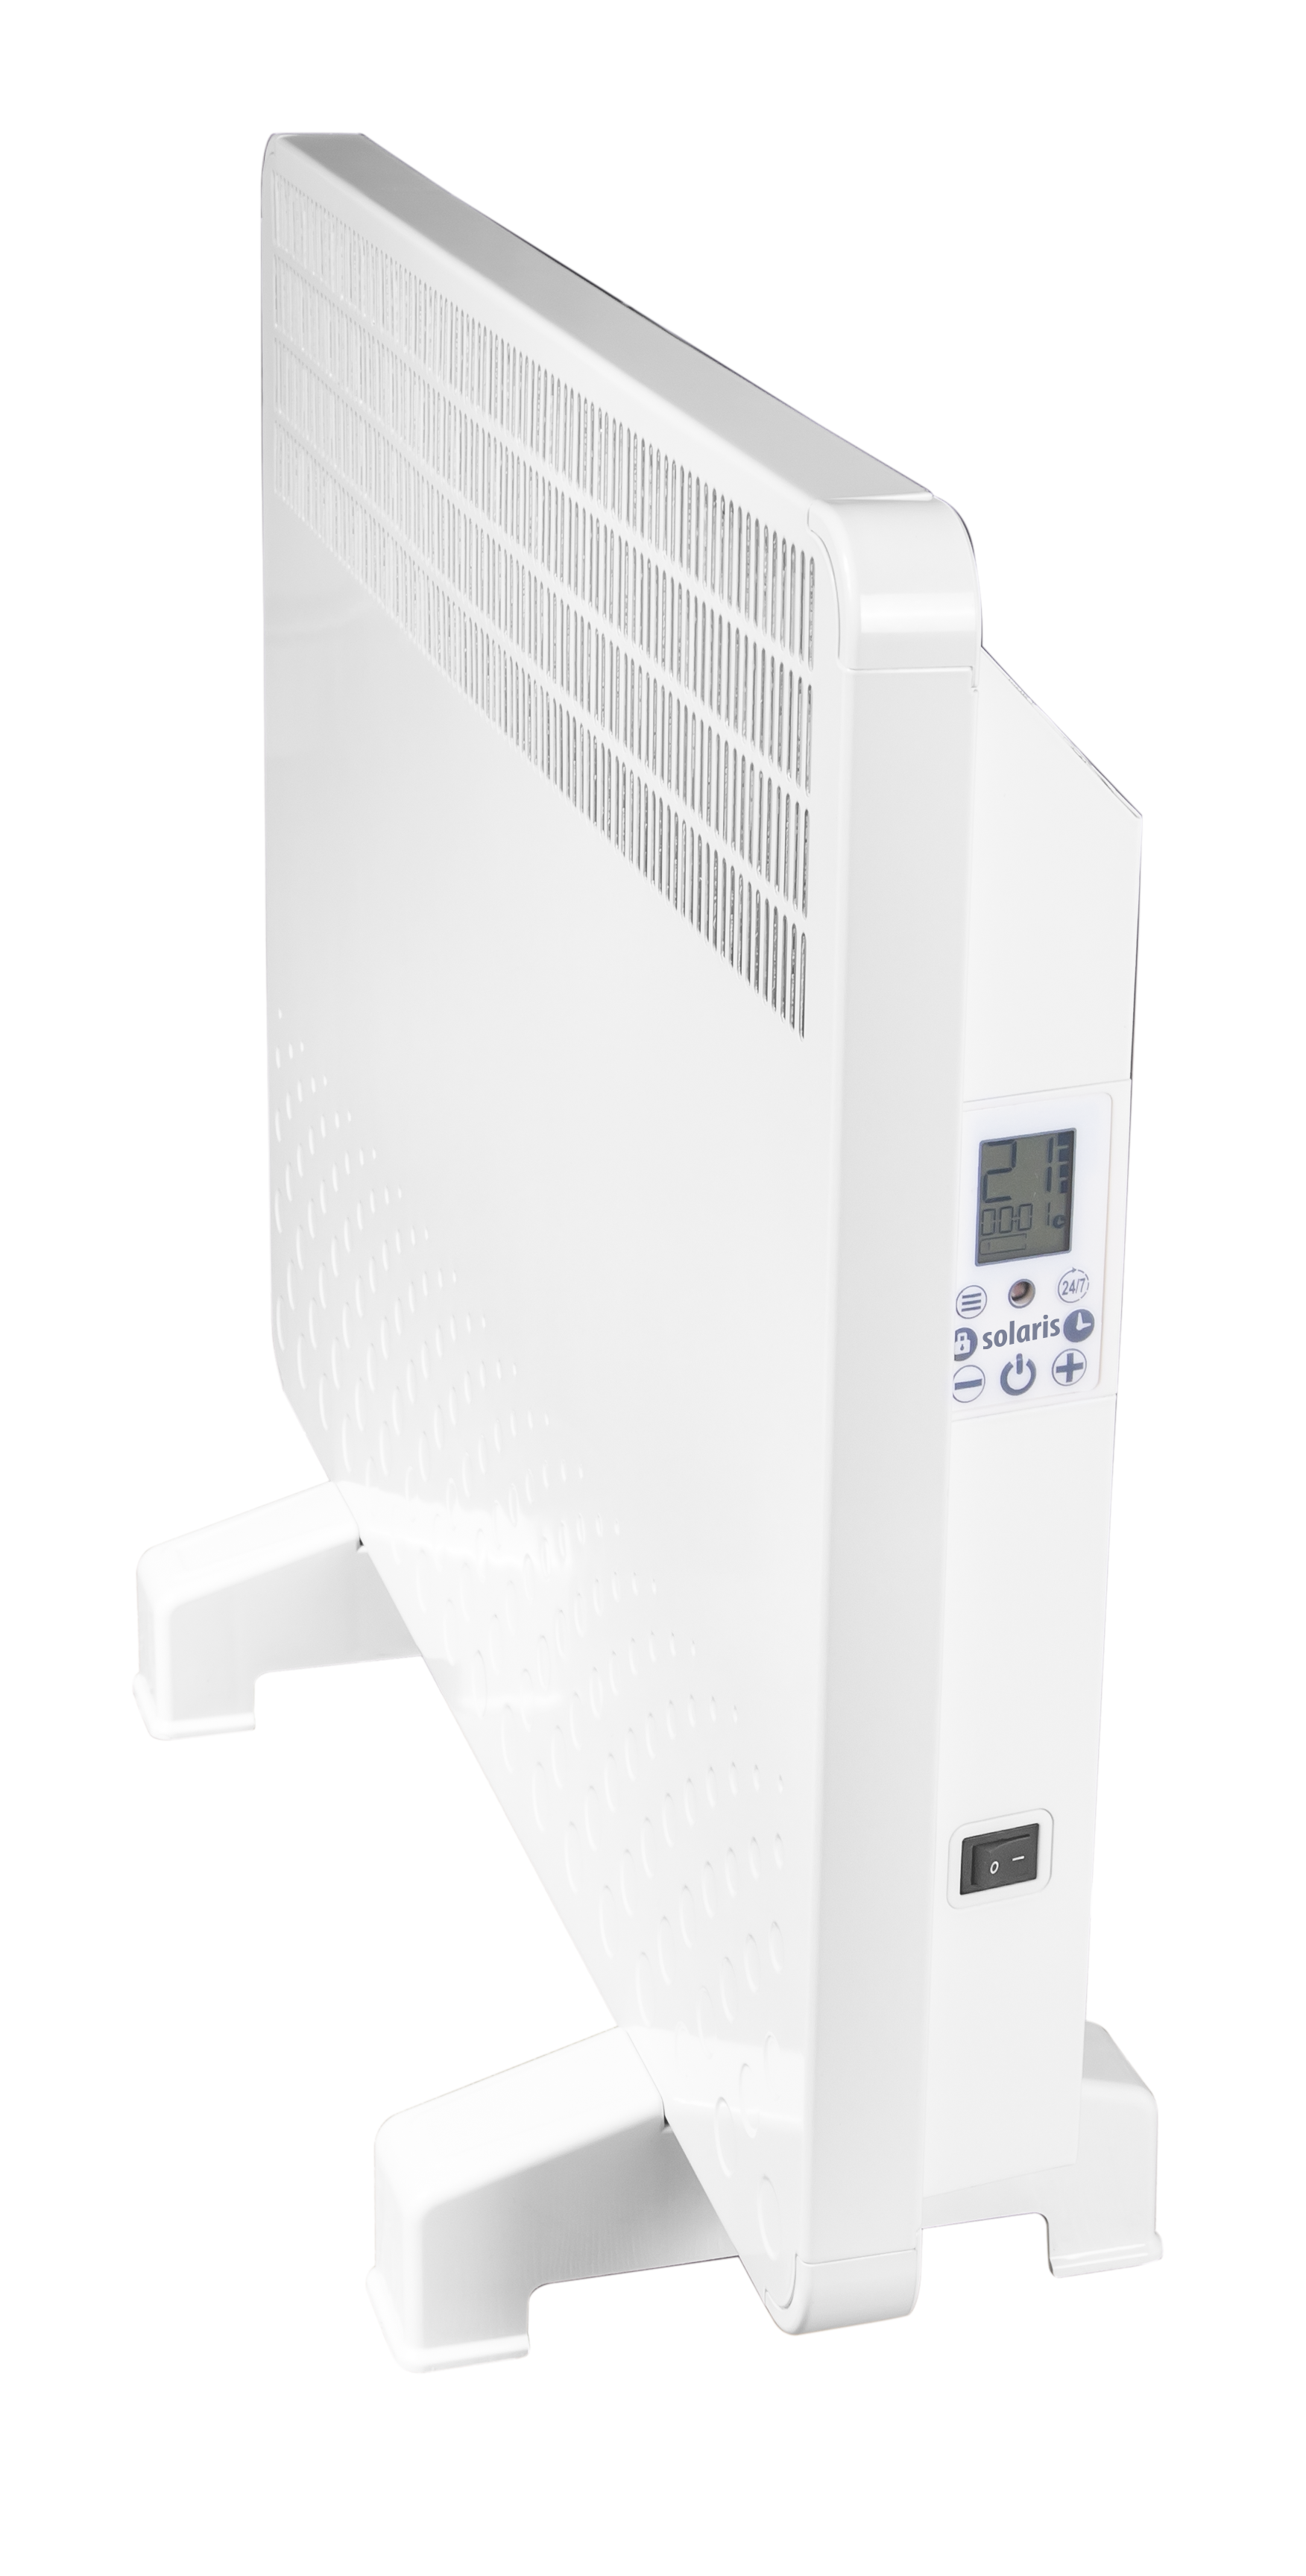 Convector electric de perete sau pardoseala Solaris KIP 1000 W, control electronic, Termostat de siguranta, termostat reglabil, IP 24, ERP 2018, pana la 12 mp de la fornello imagine noua